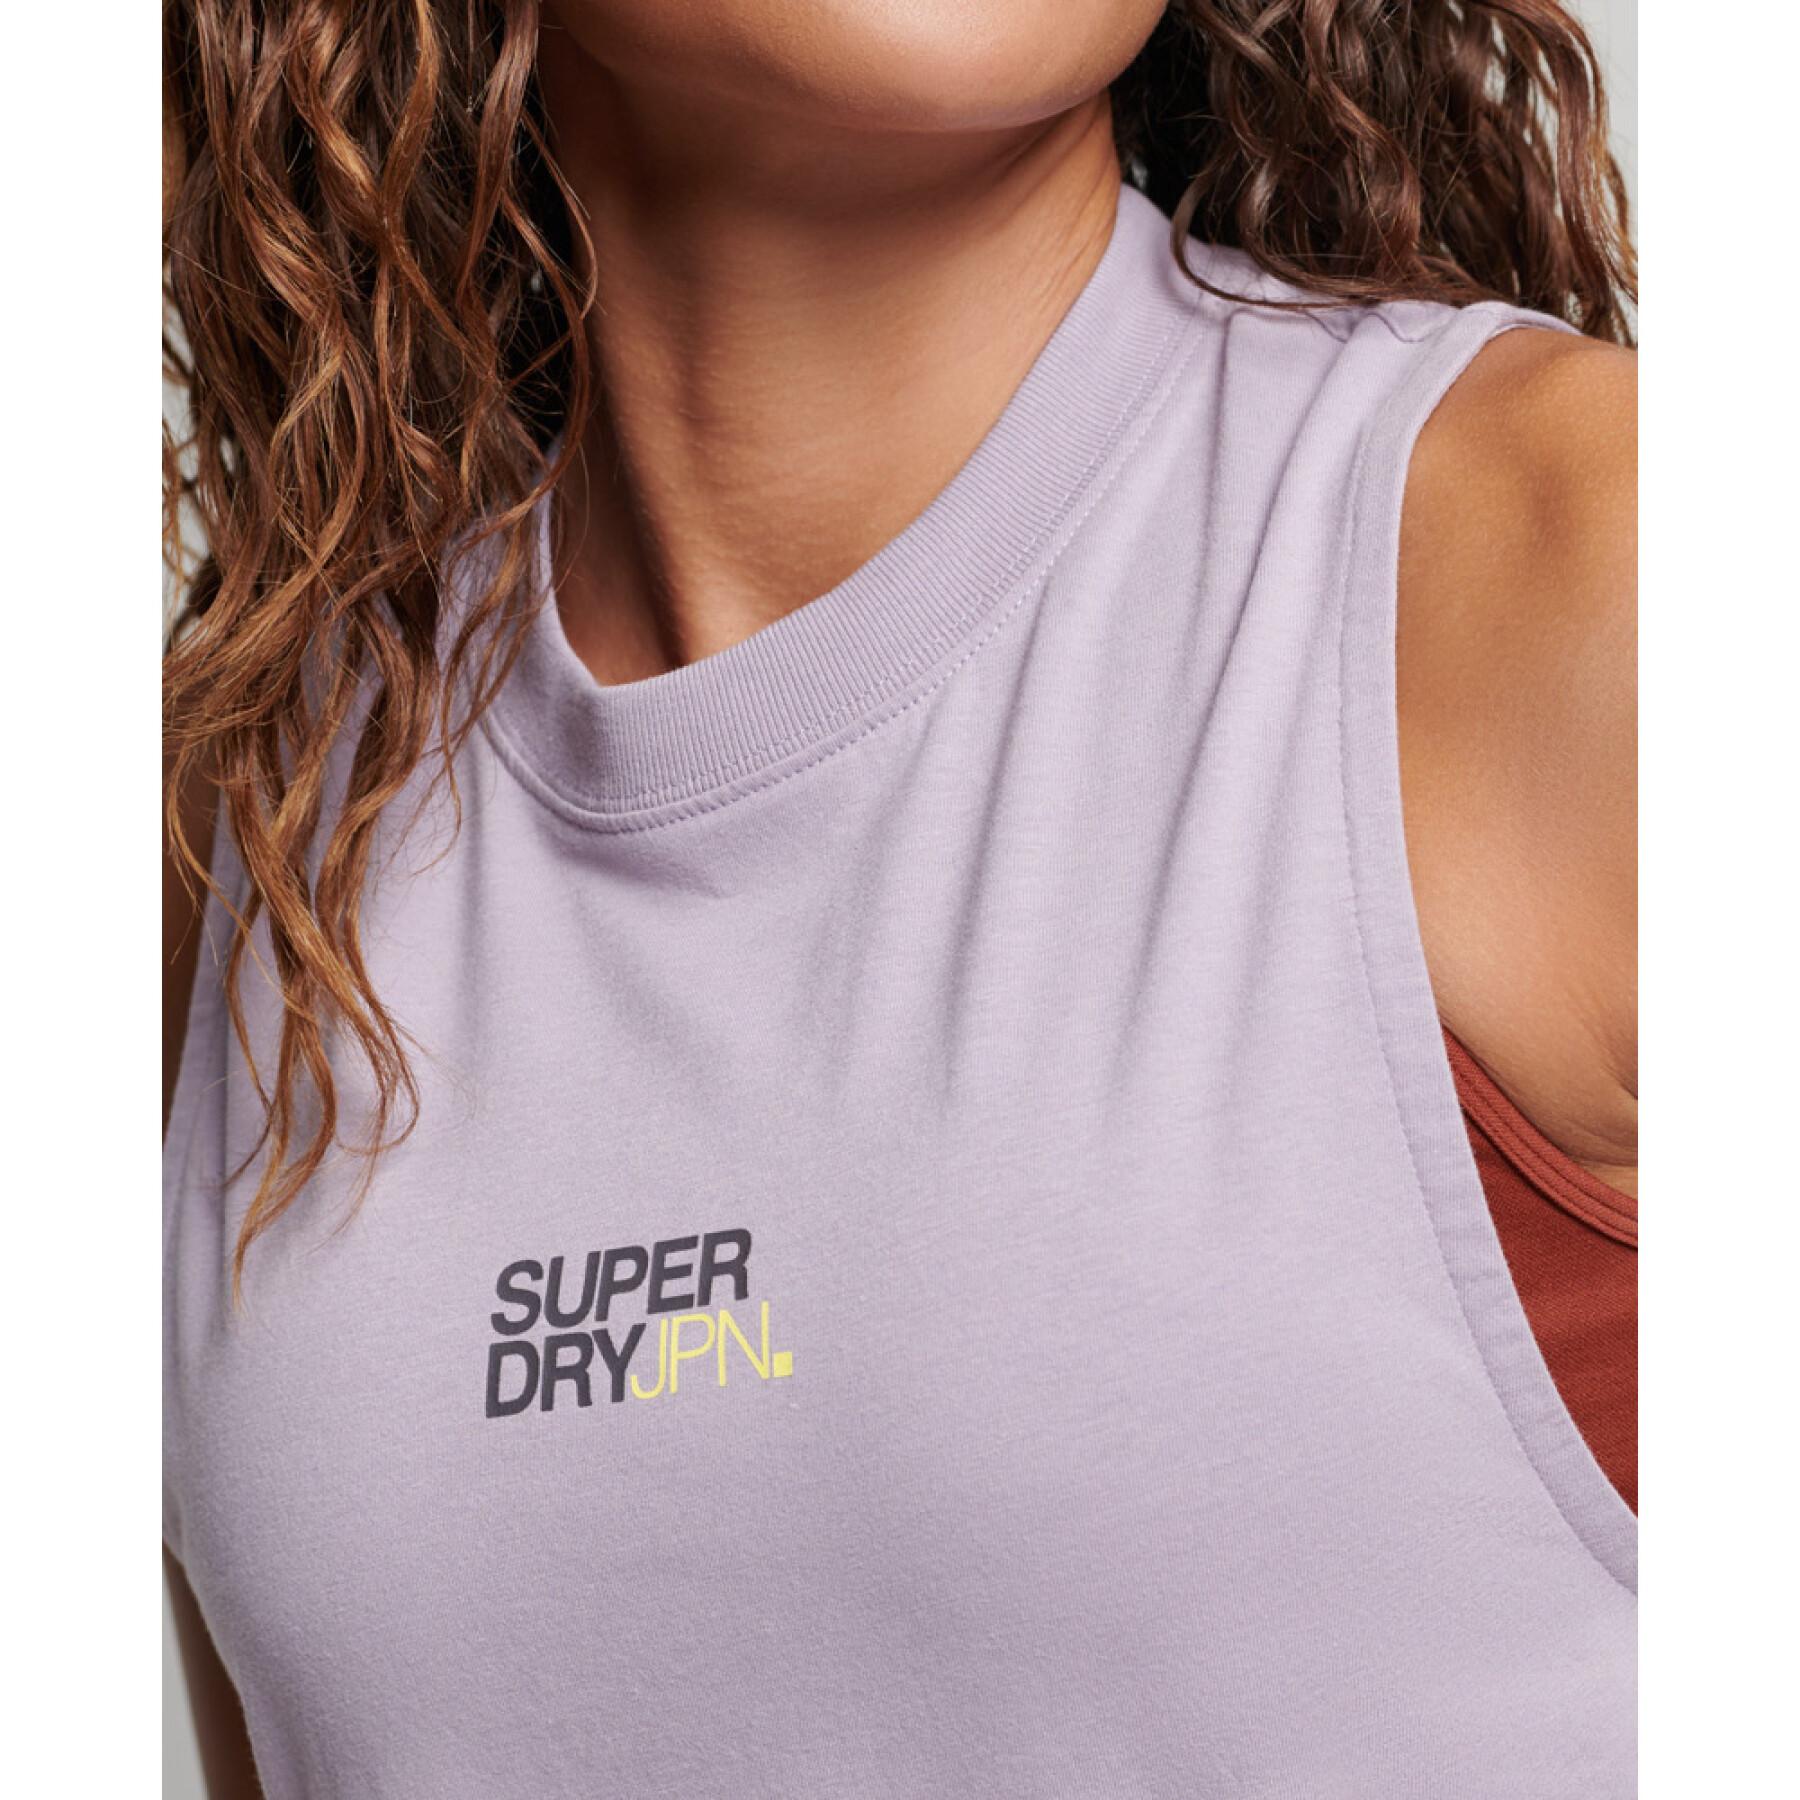 Camiseta de tirantes larga mujer en algodón orgánico Superdry